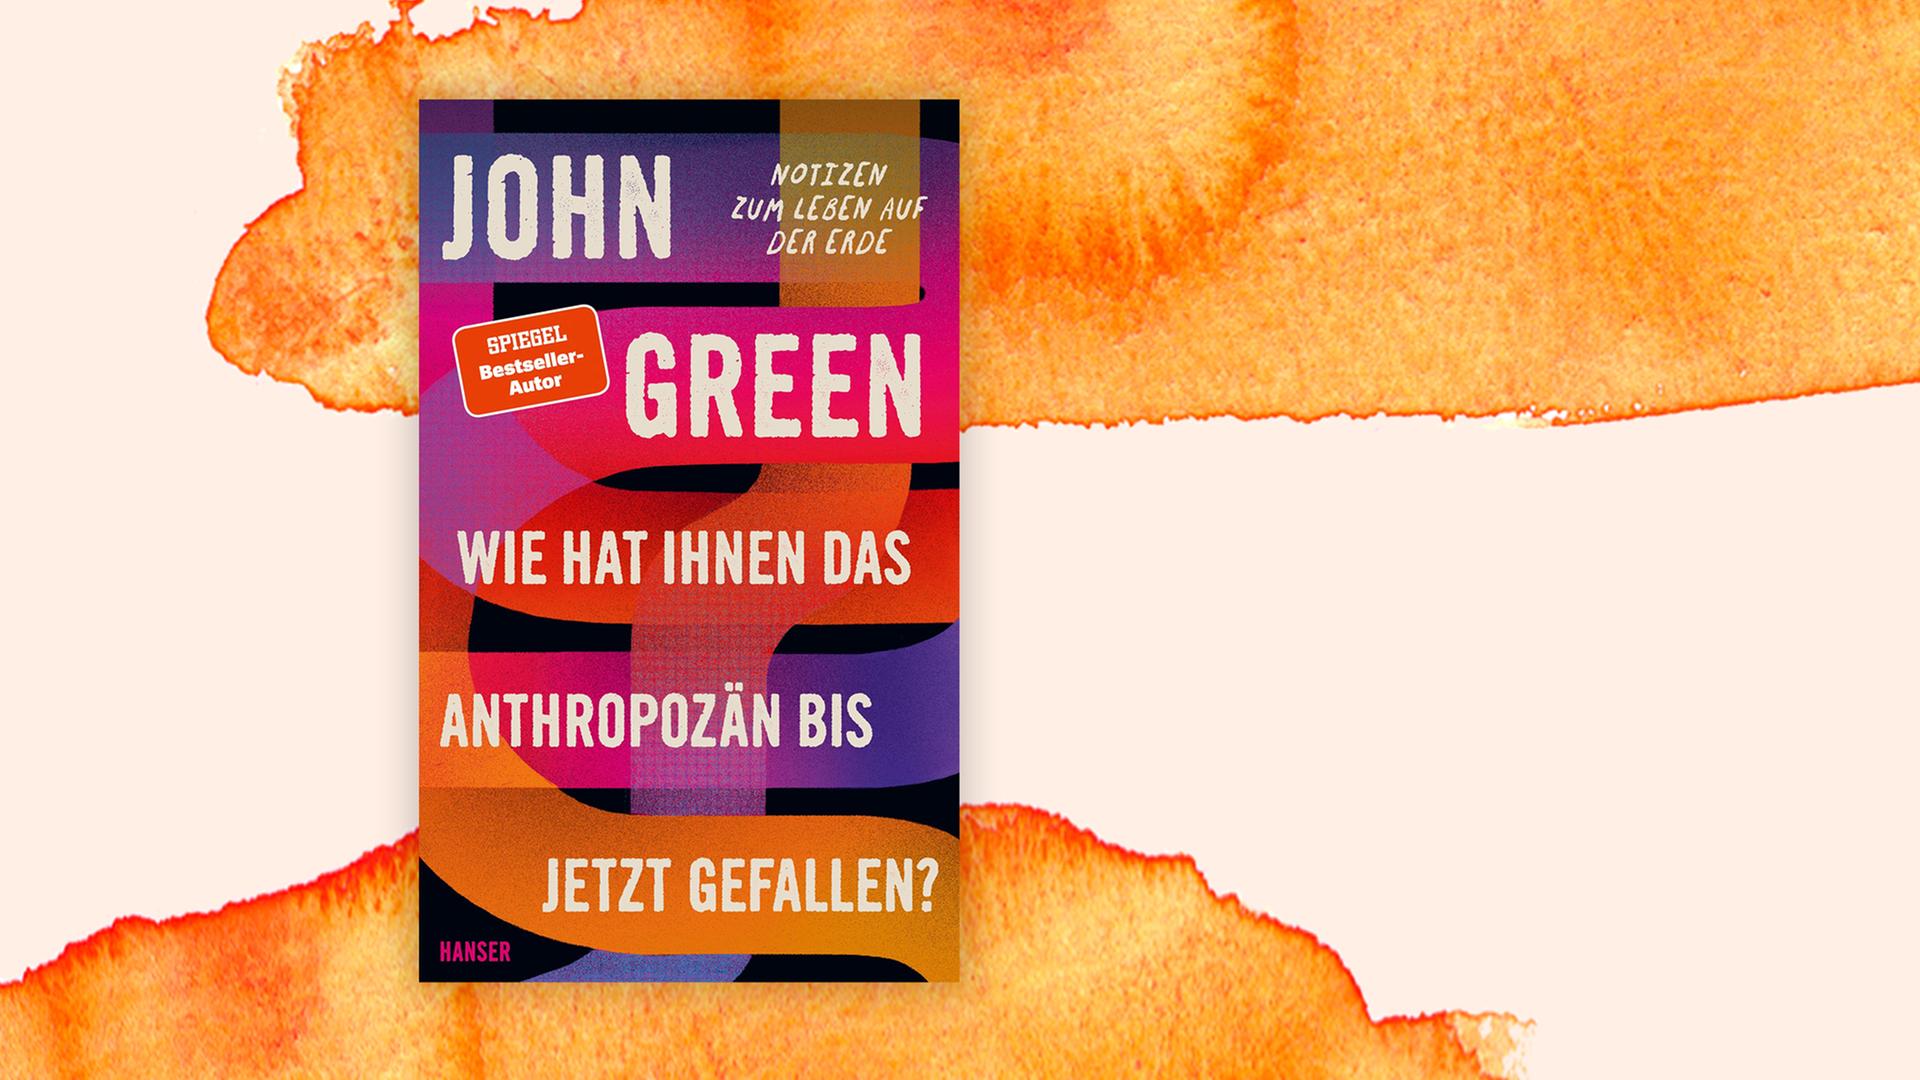 Buchcover: "Wie hat Ihnen das Anthropozän bis jetzt gefallen? Notizen zum Leben auf der Erde" von John Green